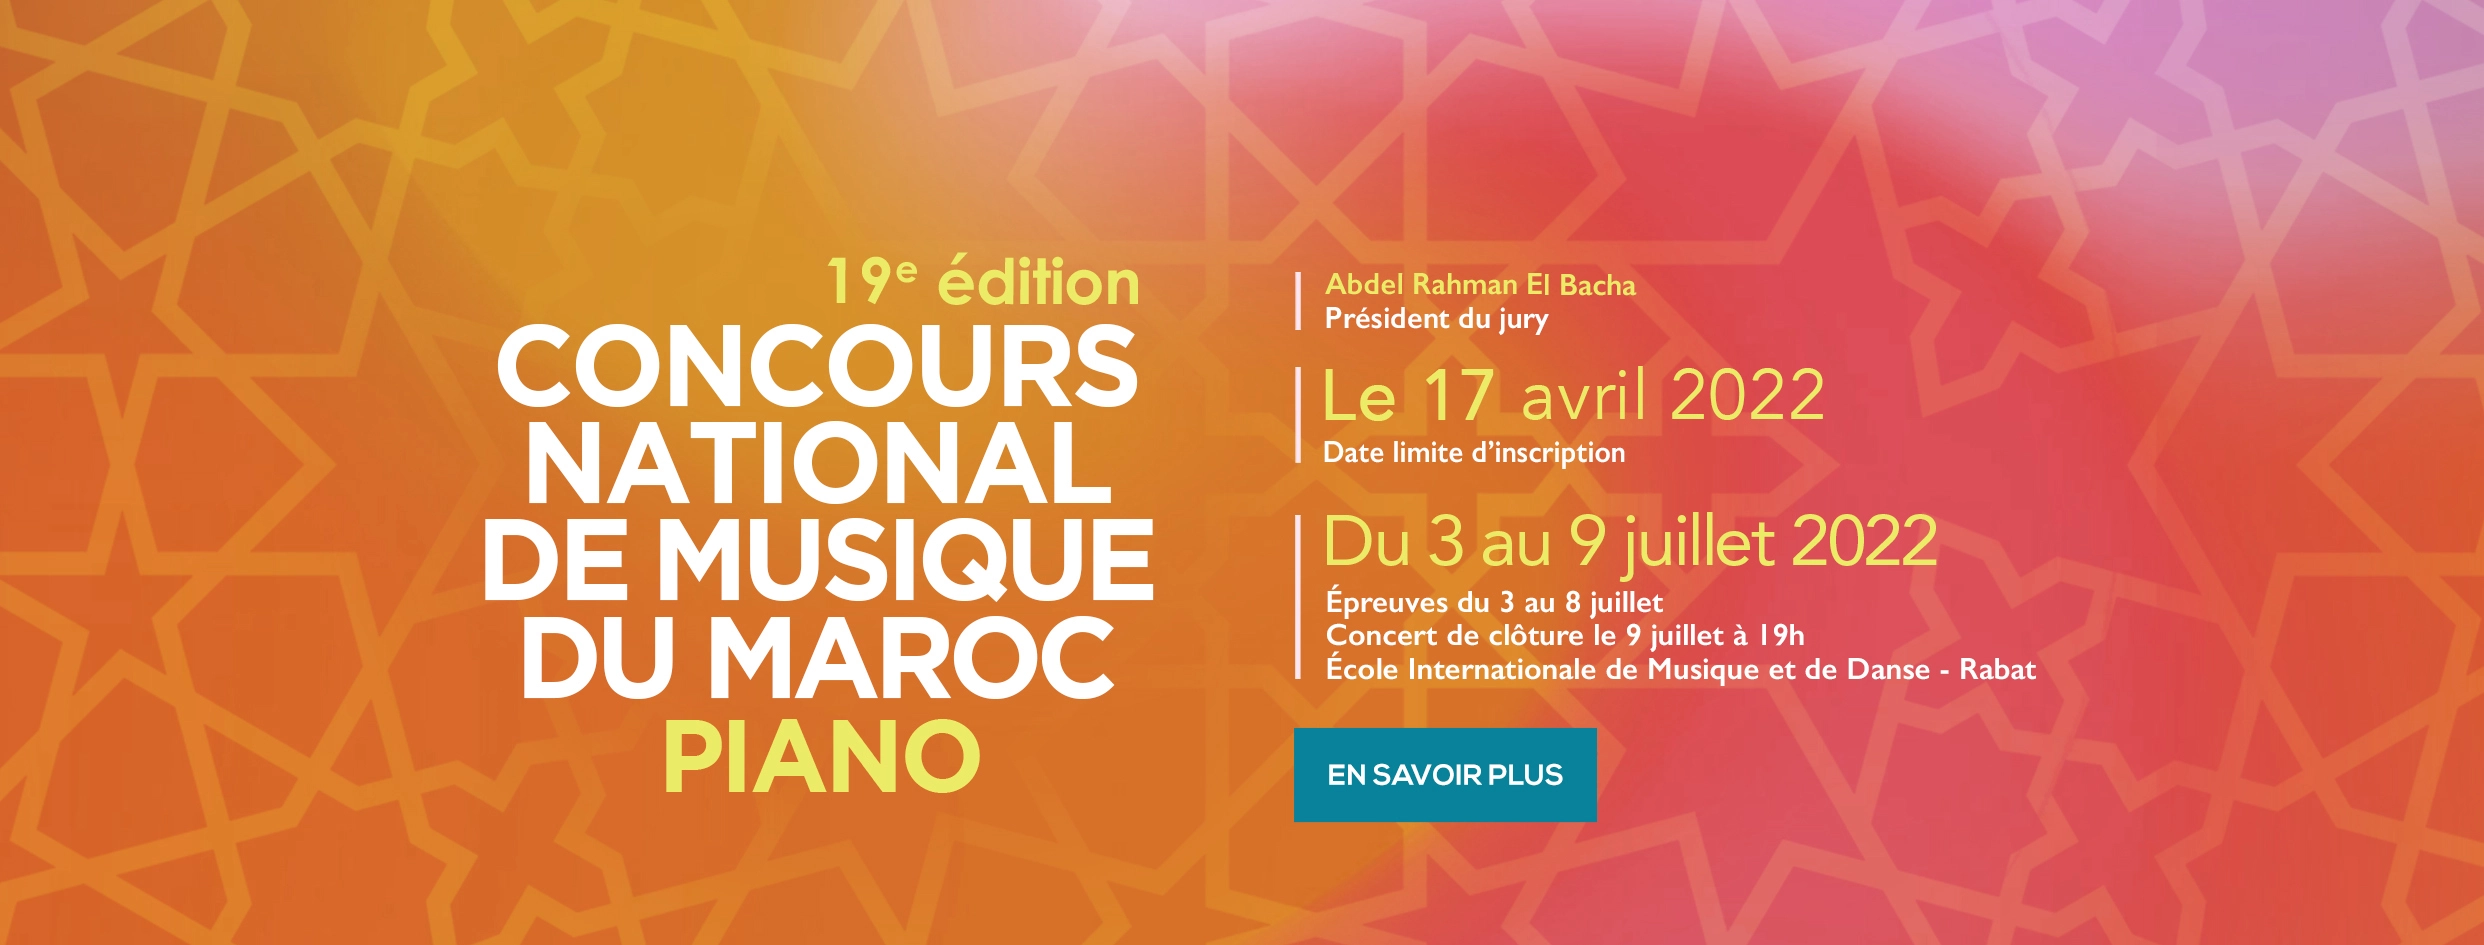 Concours national de musique du Maroc